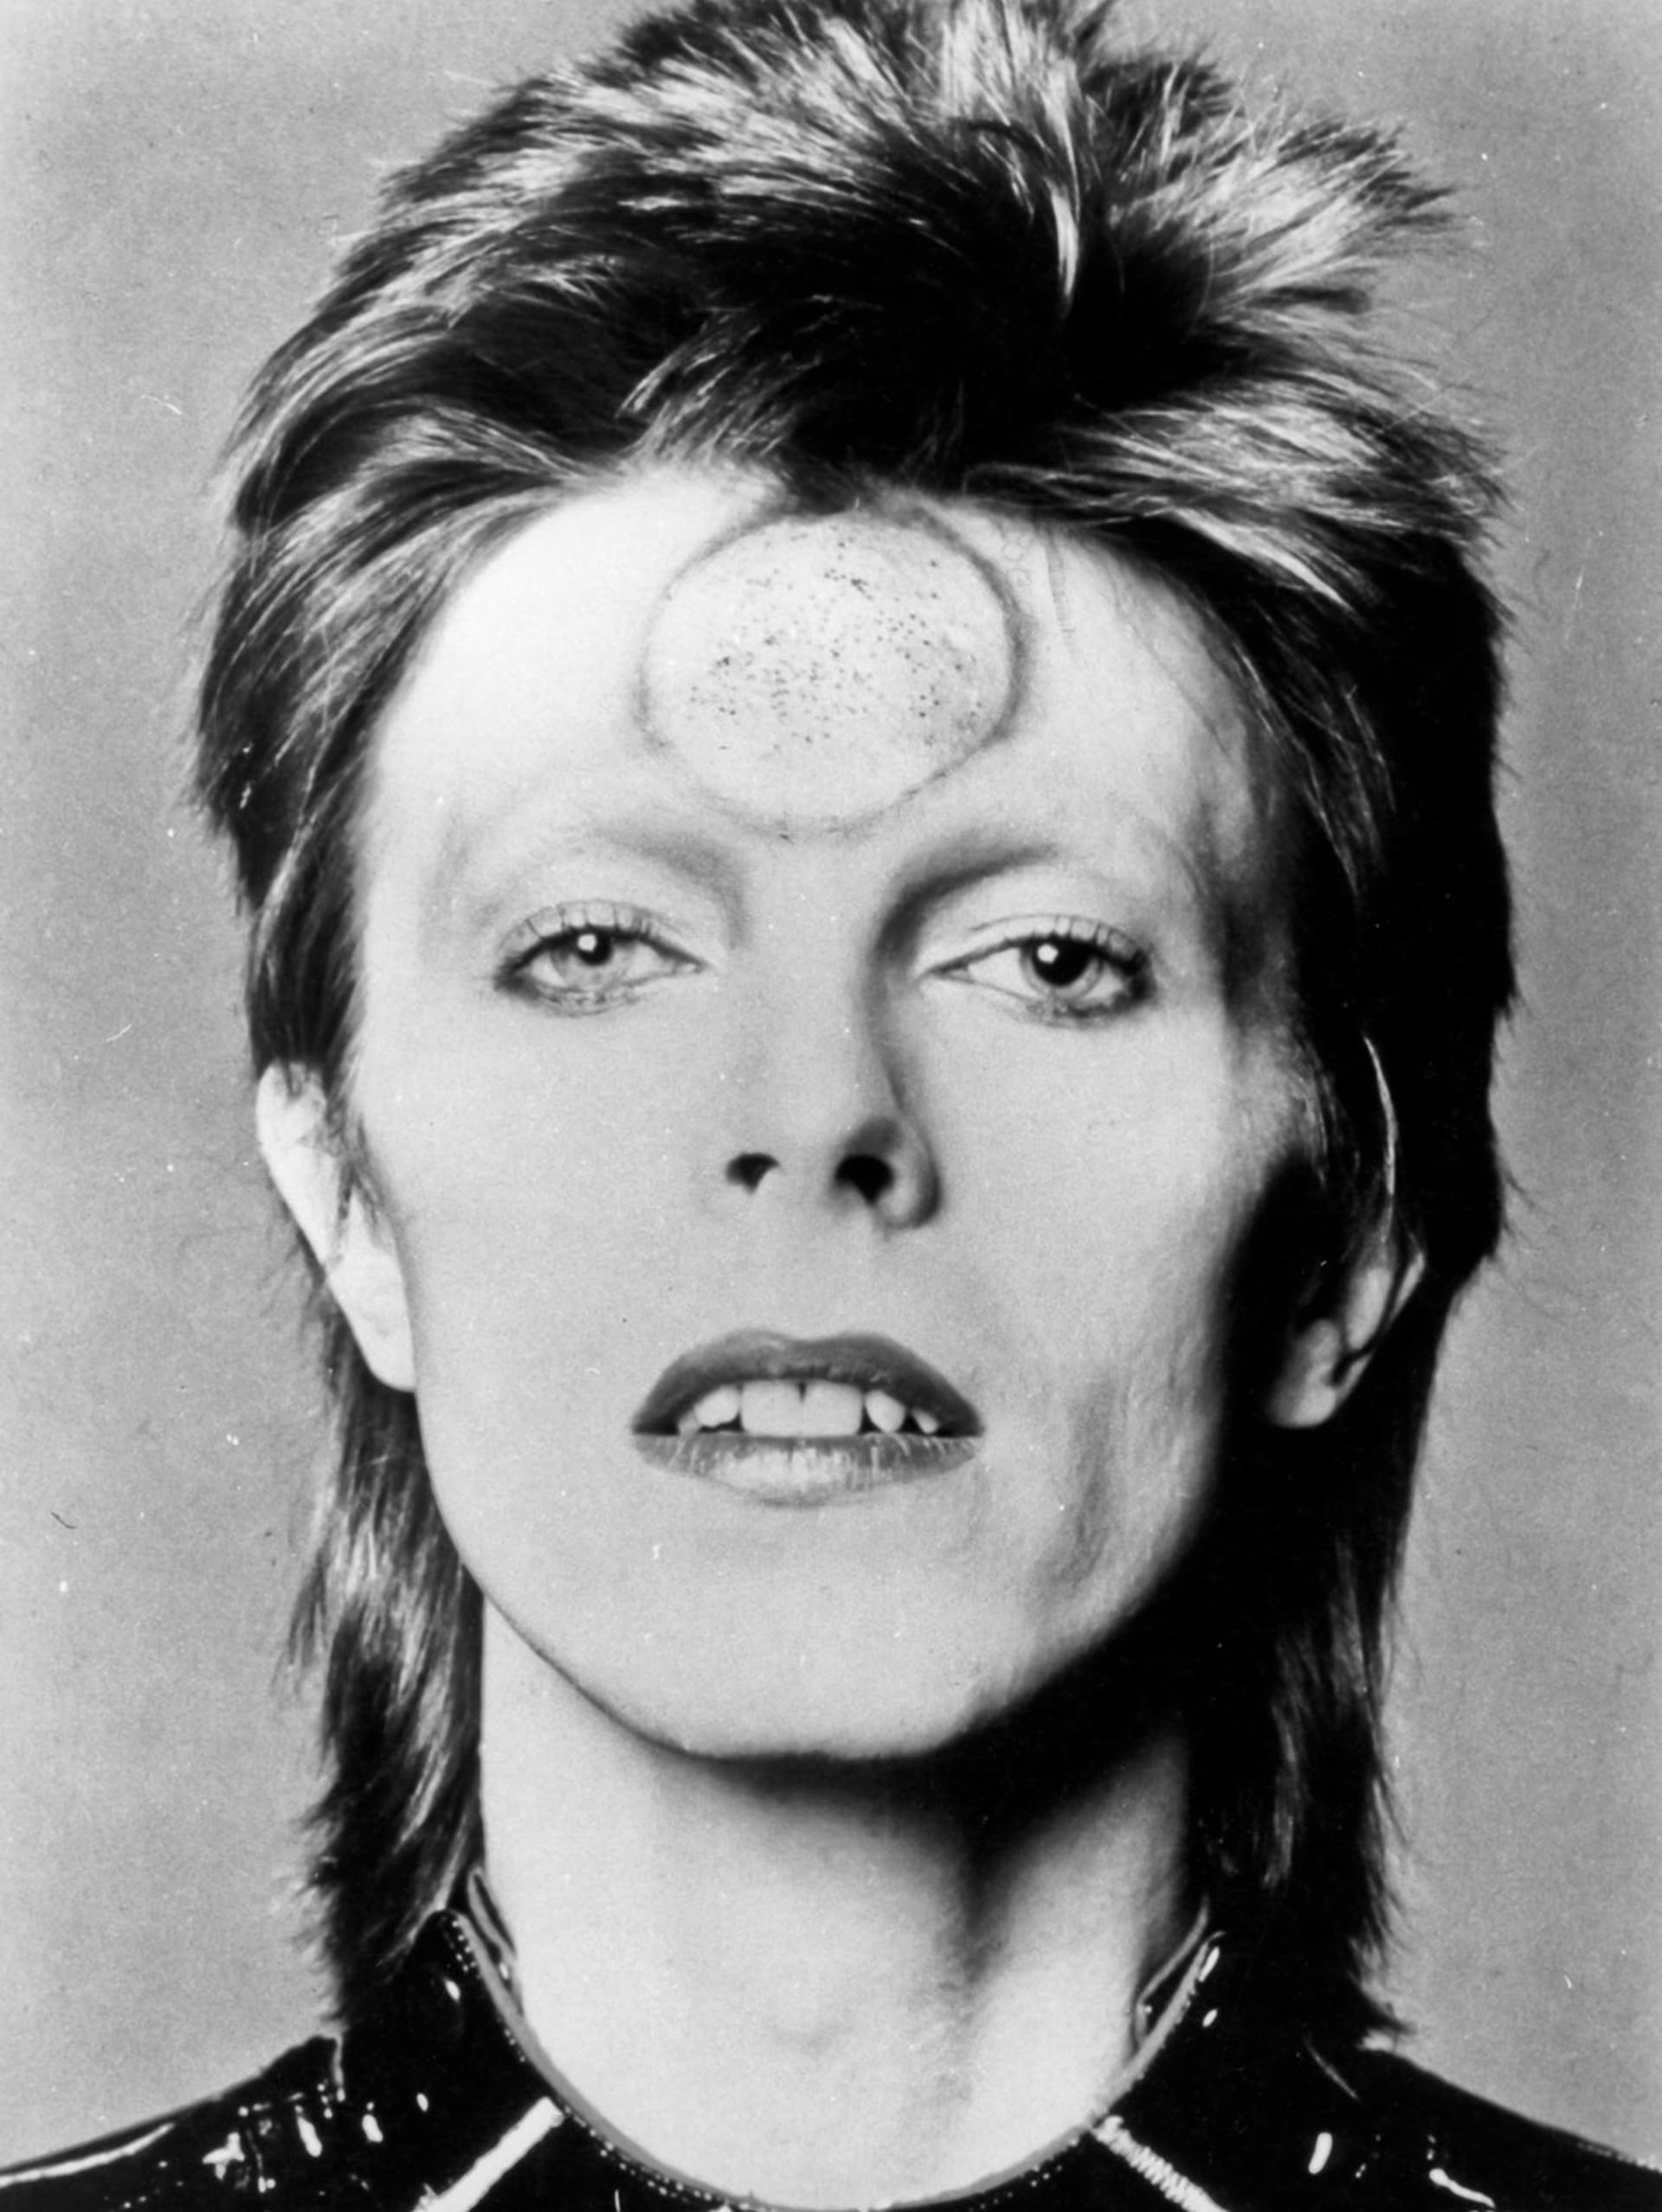 Hudební legenda David Bowie také propadl tomuto módnímu trendu